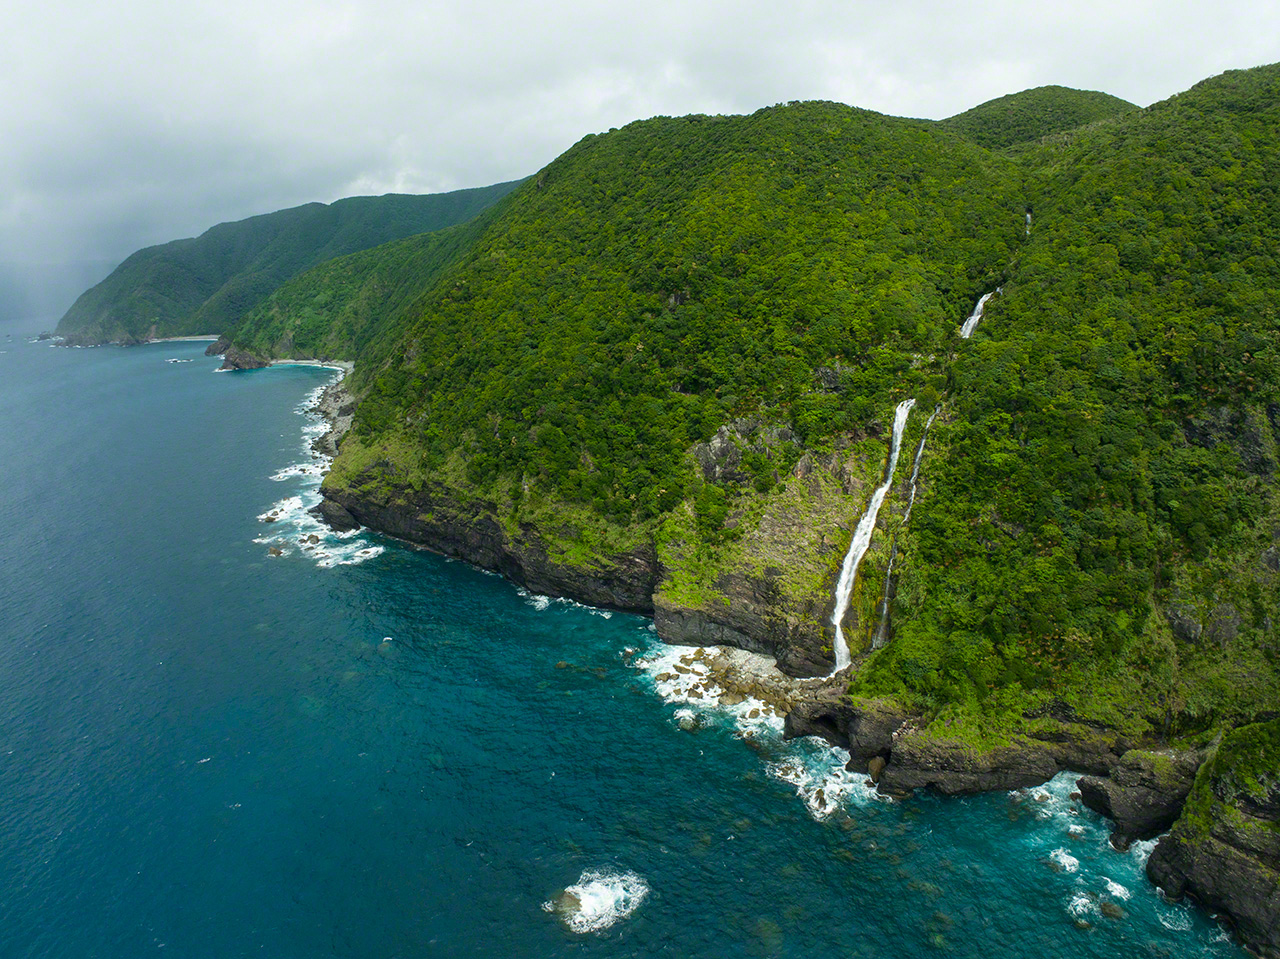 La cascada de Kurukichi, con sus 181 metros de caída, fue catalogada en 2021 como una de las más grandes de la región de Kyūshū. Los saltos de agua son comunes en las costas orientales de Amami Ōshima, muy abruptas.